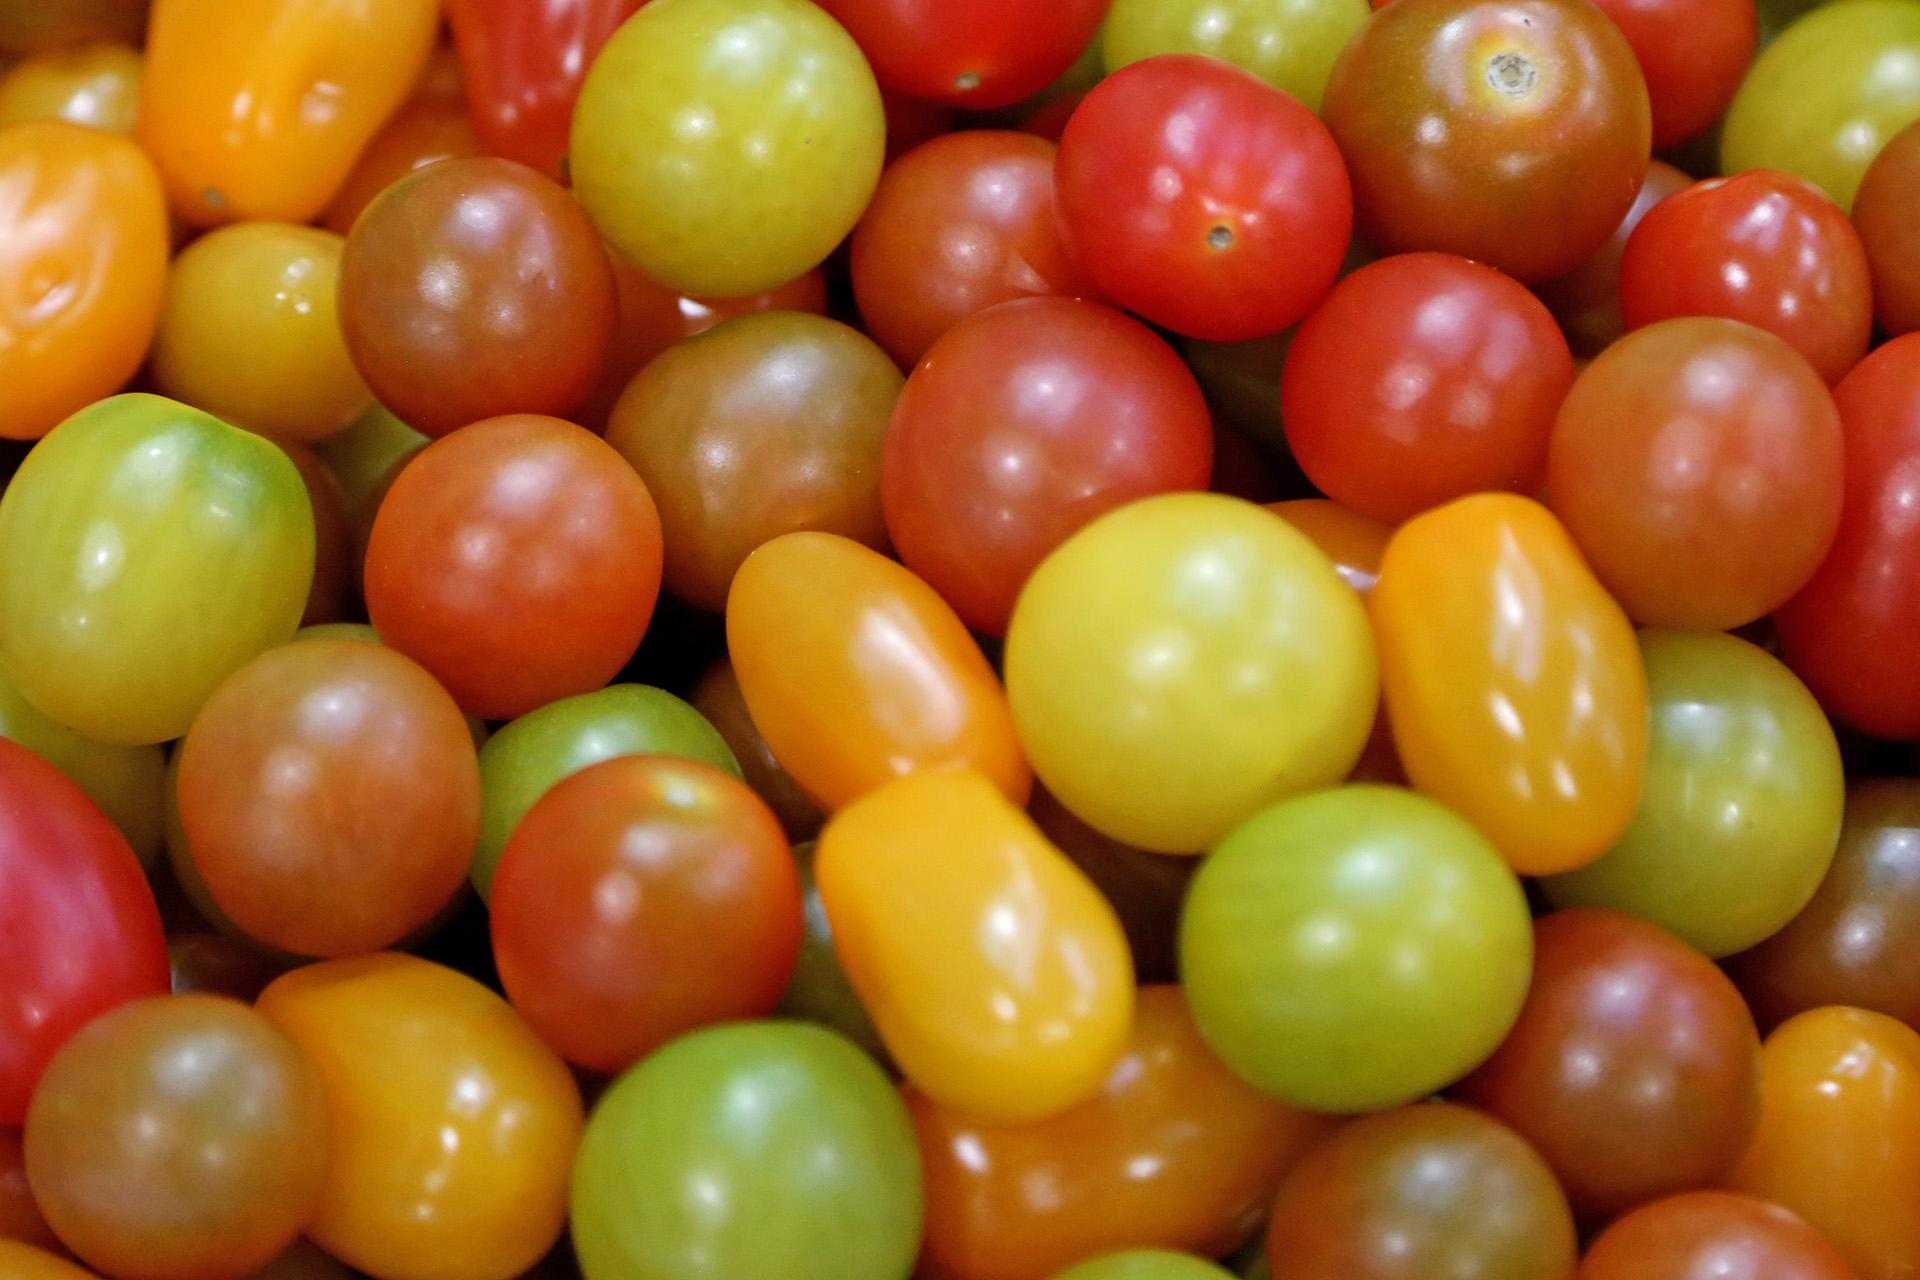 rosii cherry România importă tomate din Turcia în valoare de 92 milioane de dolari!